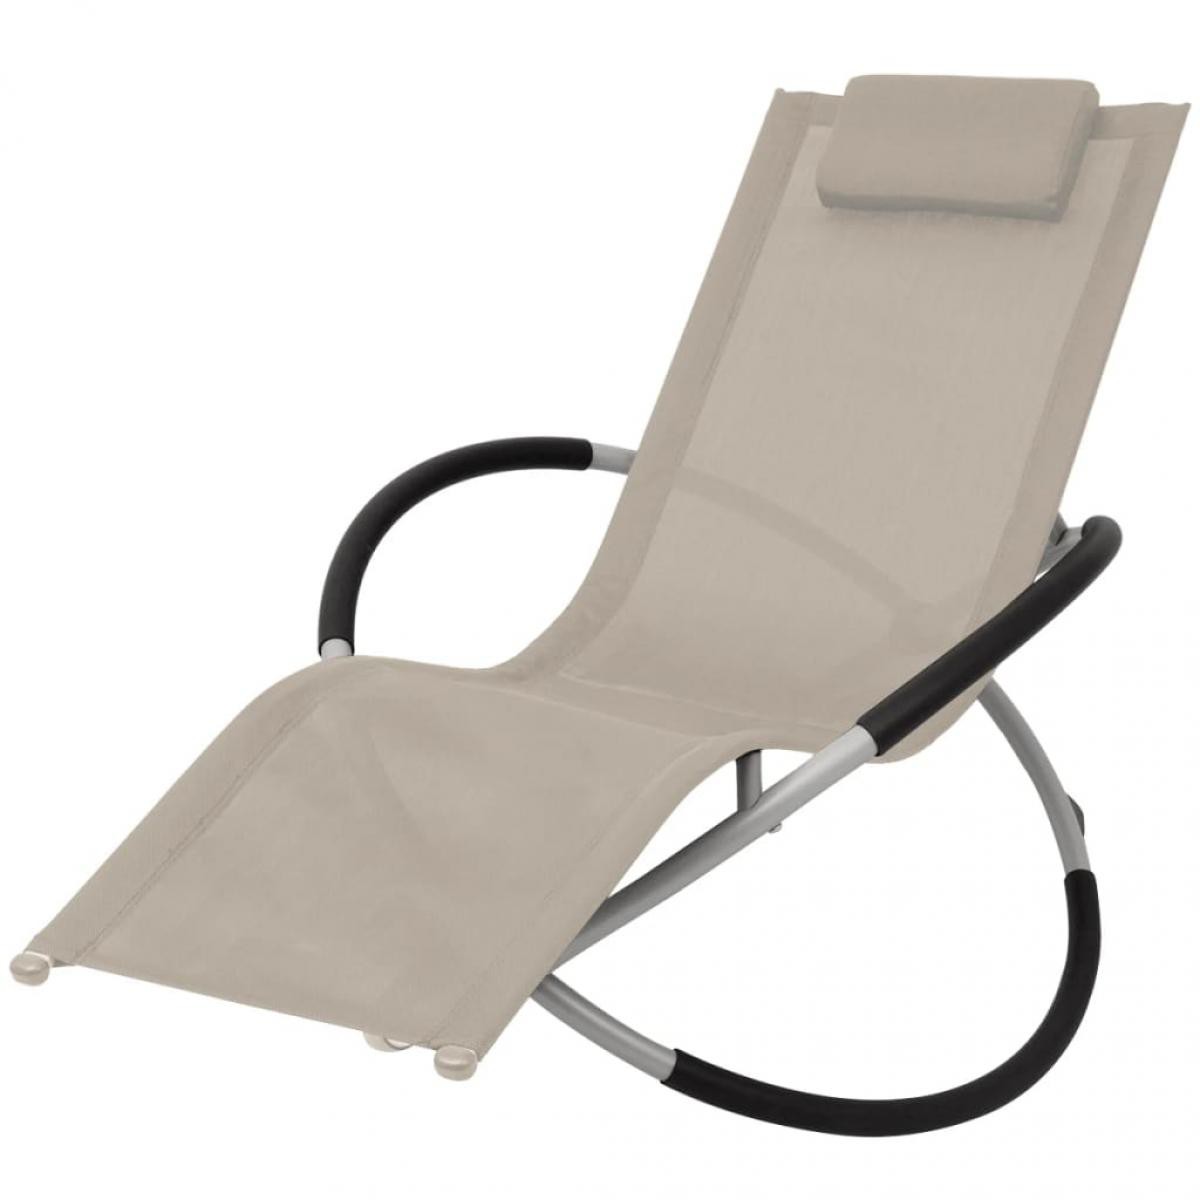 Vidaxl - vidaXL Chaise longue géométrique d'extérieur Acier Crème - Transats, chaises longues